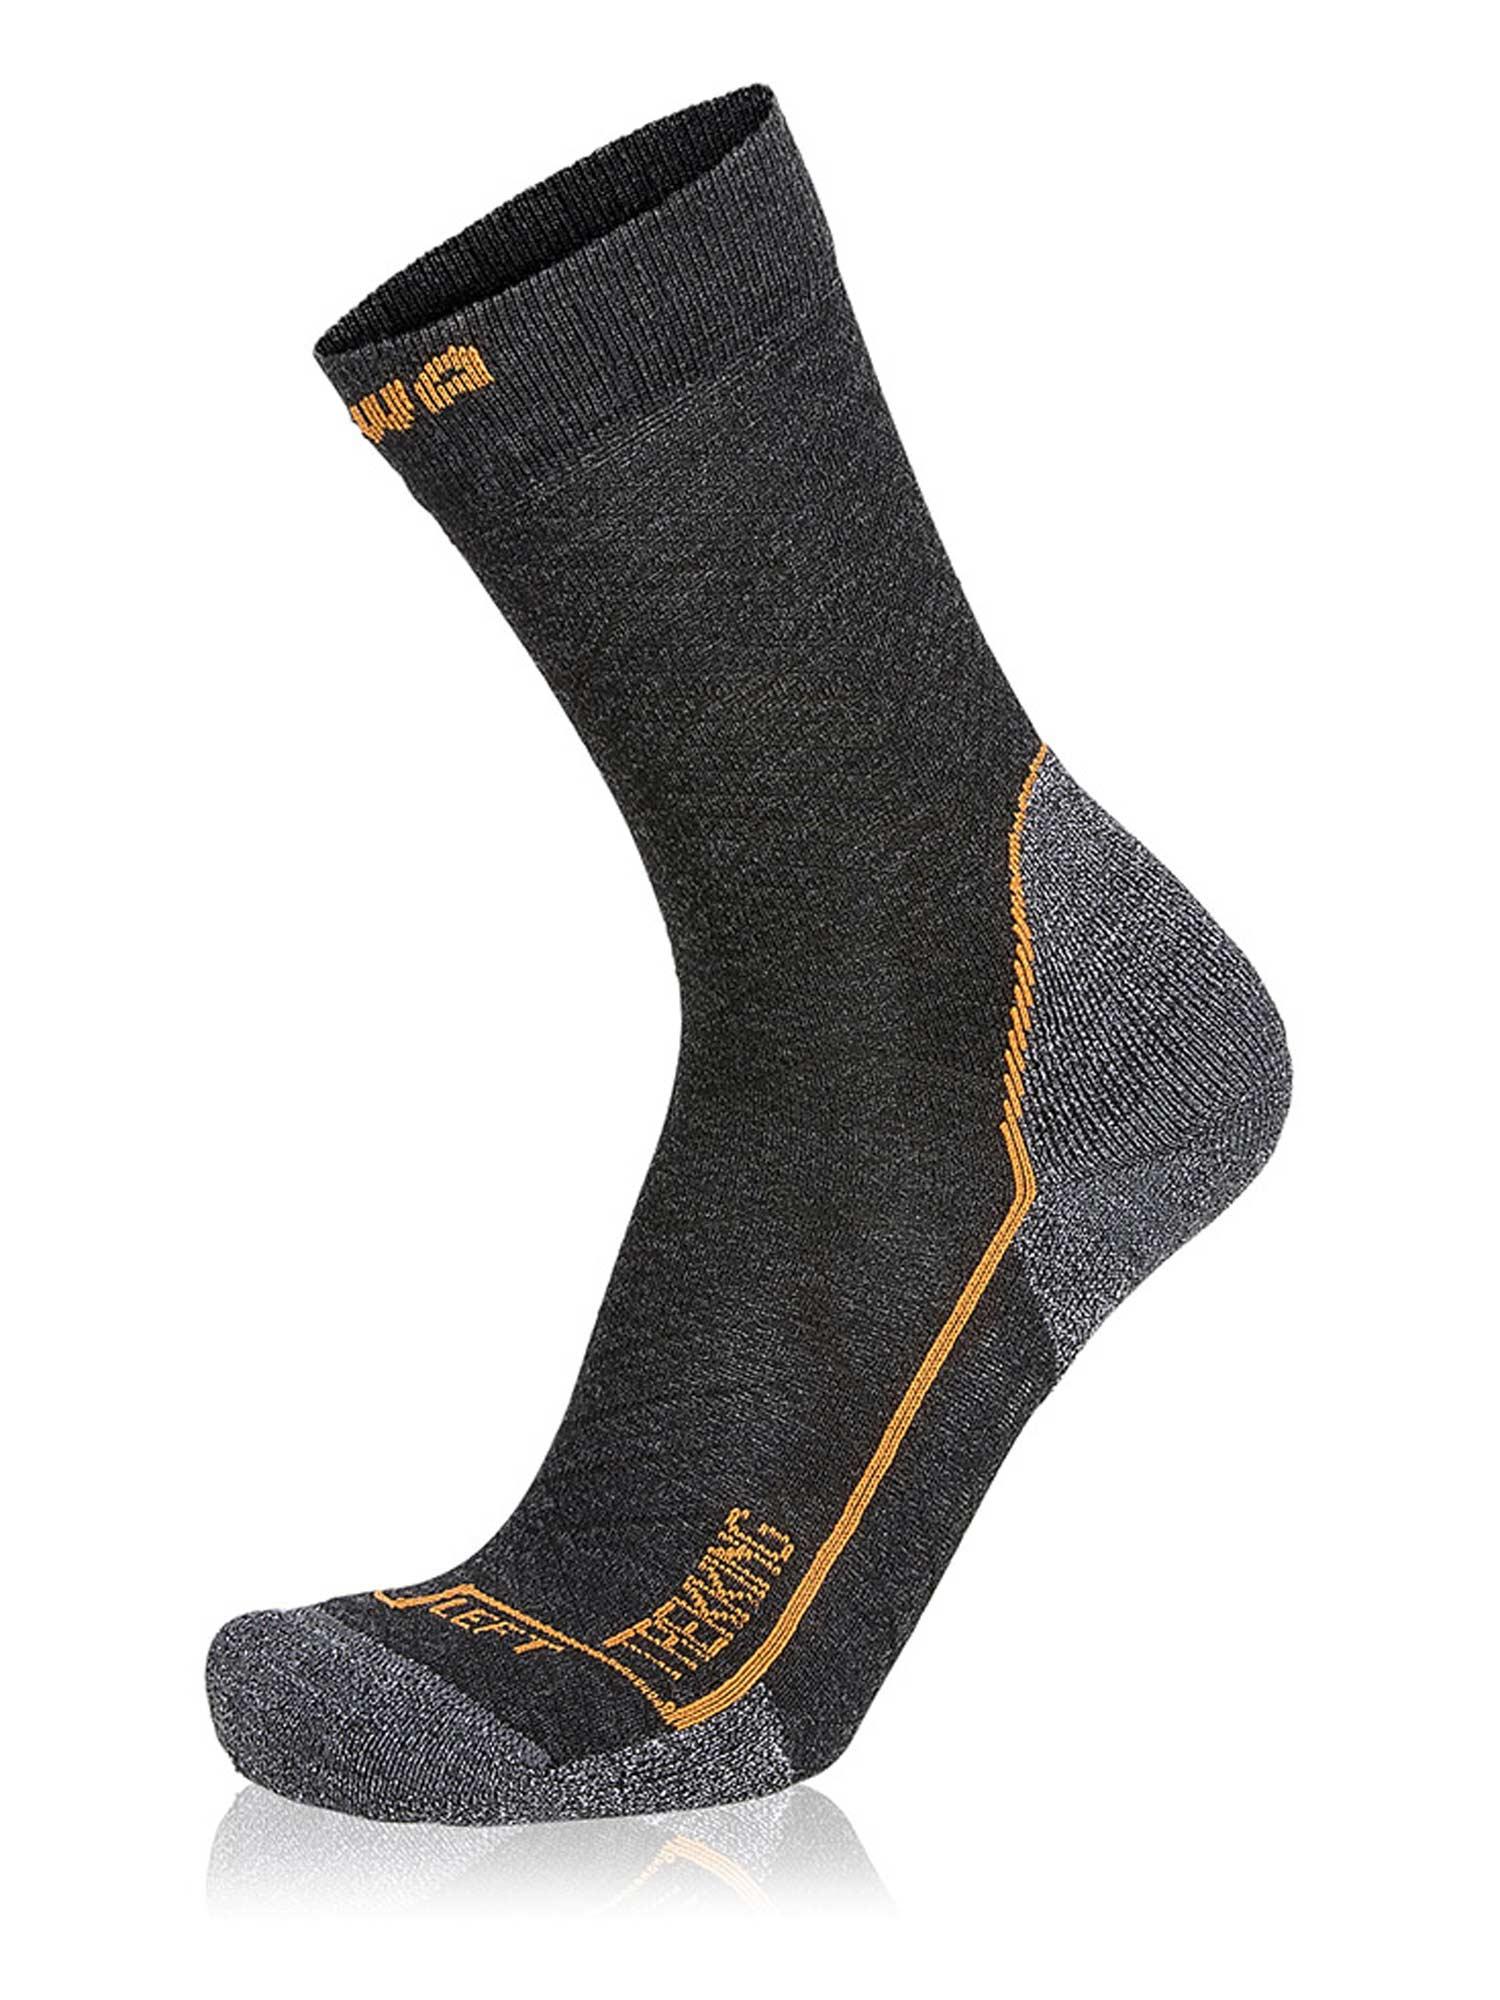 Slike LOWA Muške čarape za planinarenje Trekking mid Socks tamnosive